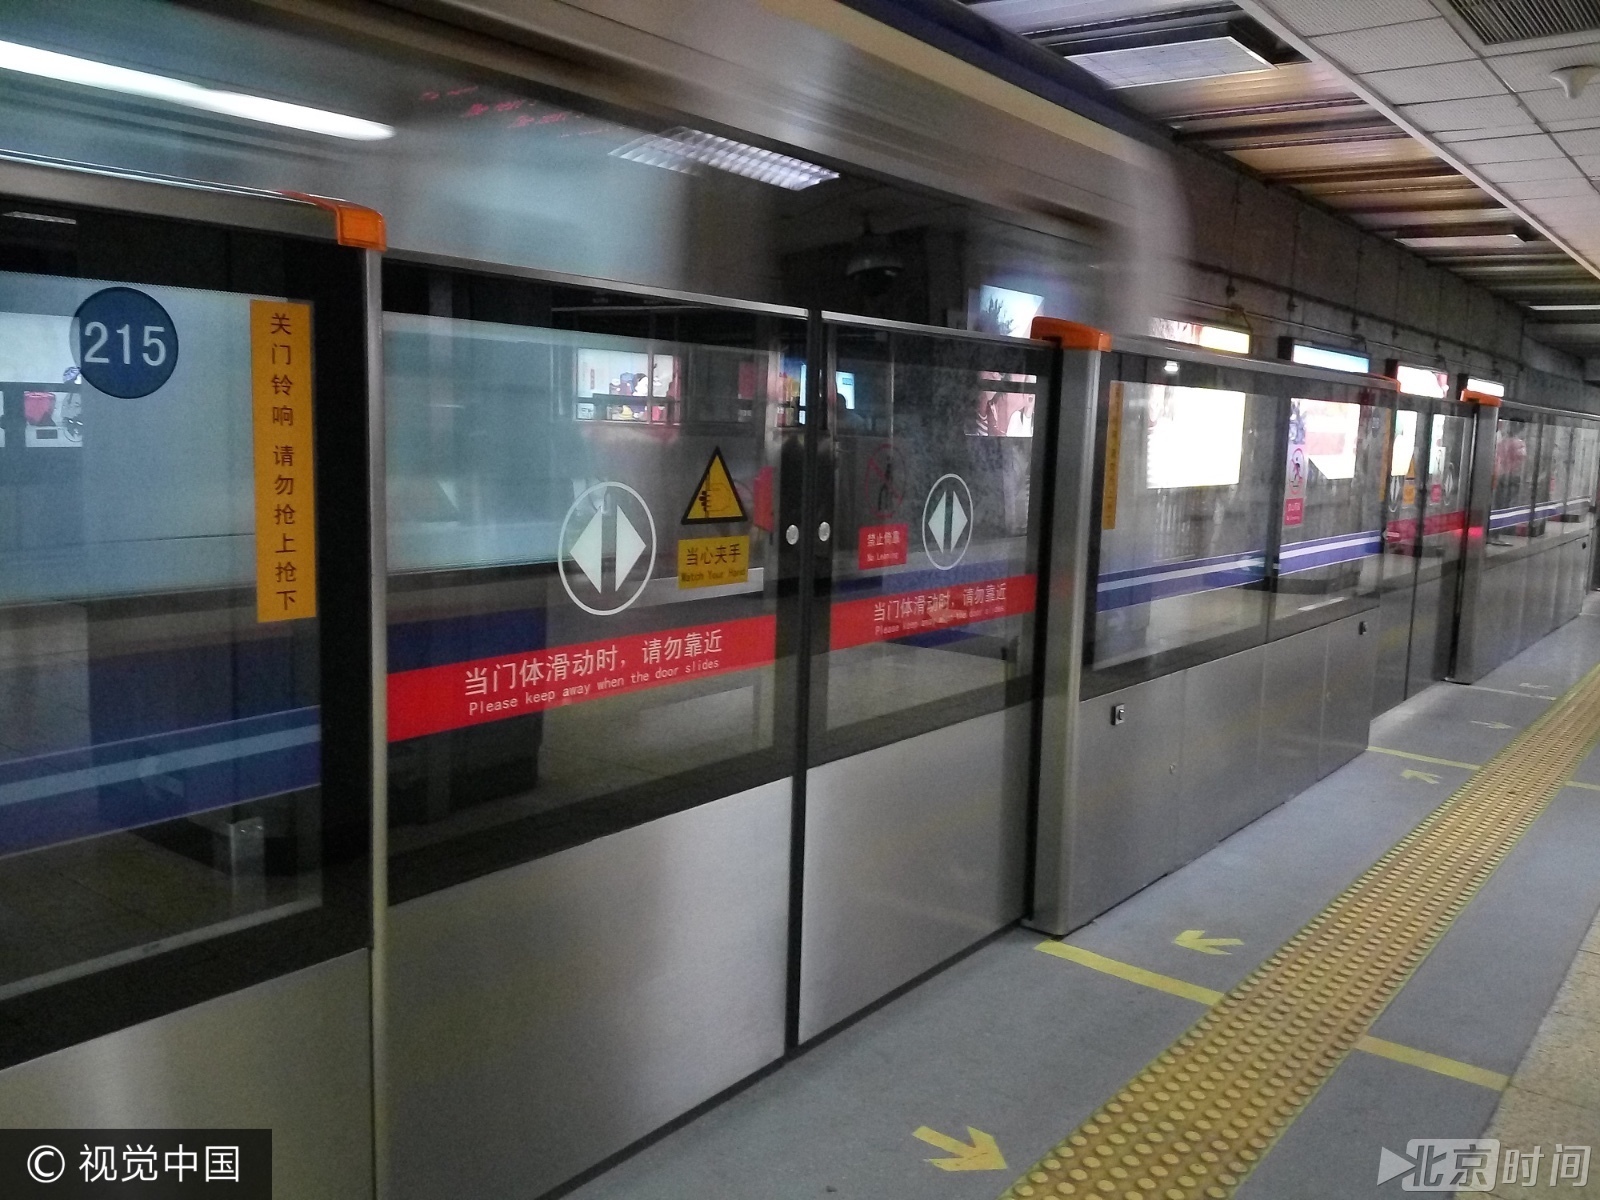 2号线屏蔽门启用 北京地铁将告别无屏蔽门时代